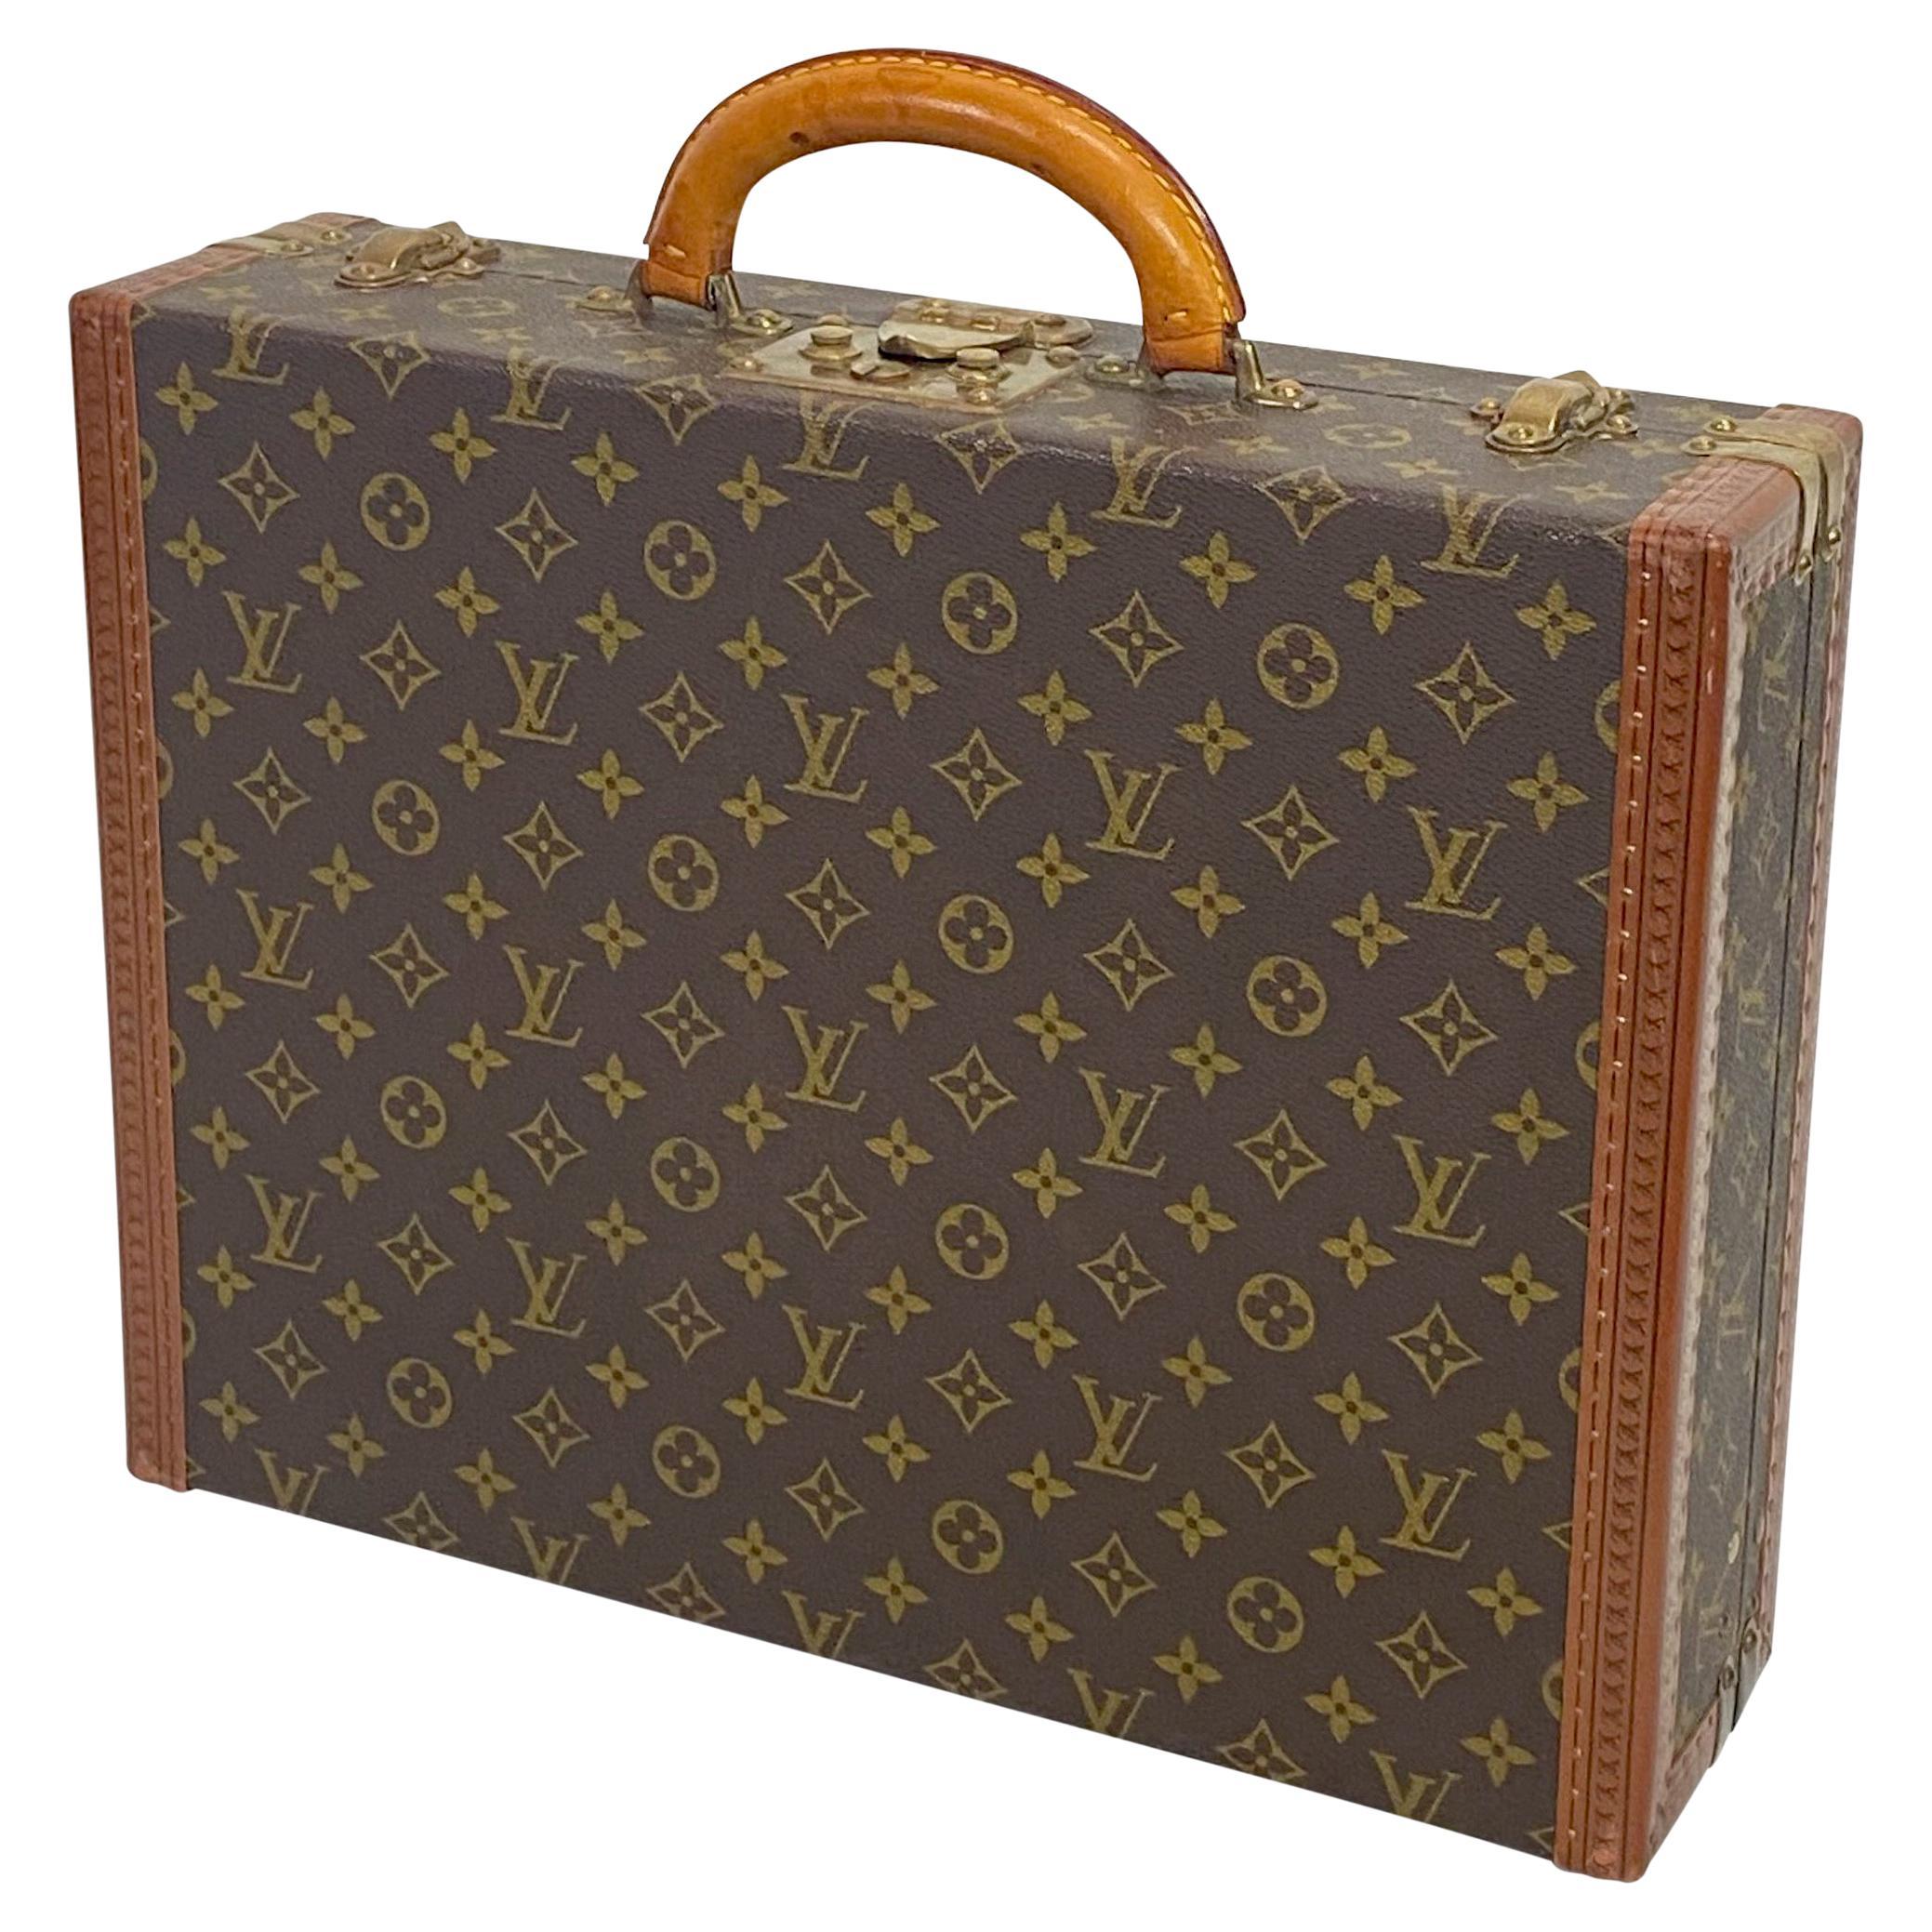 Authentic Vintage Louis Vuitton Suitcase Valise For Sale at 1stDibs  vintage  louis vuitton luggage, louis vuitton original, louis vuitton valise